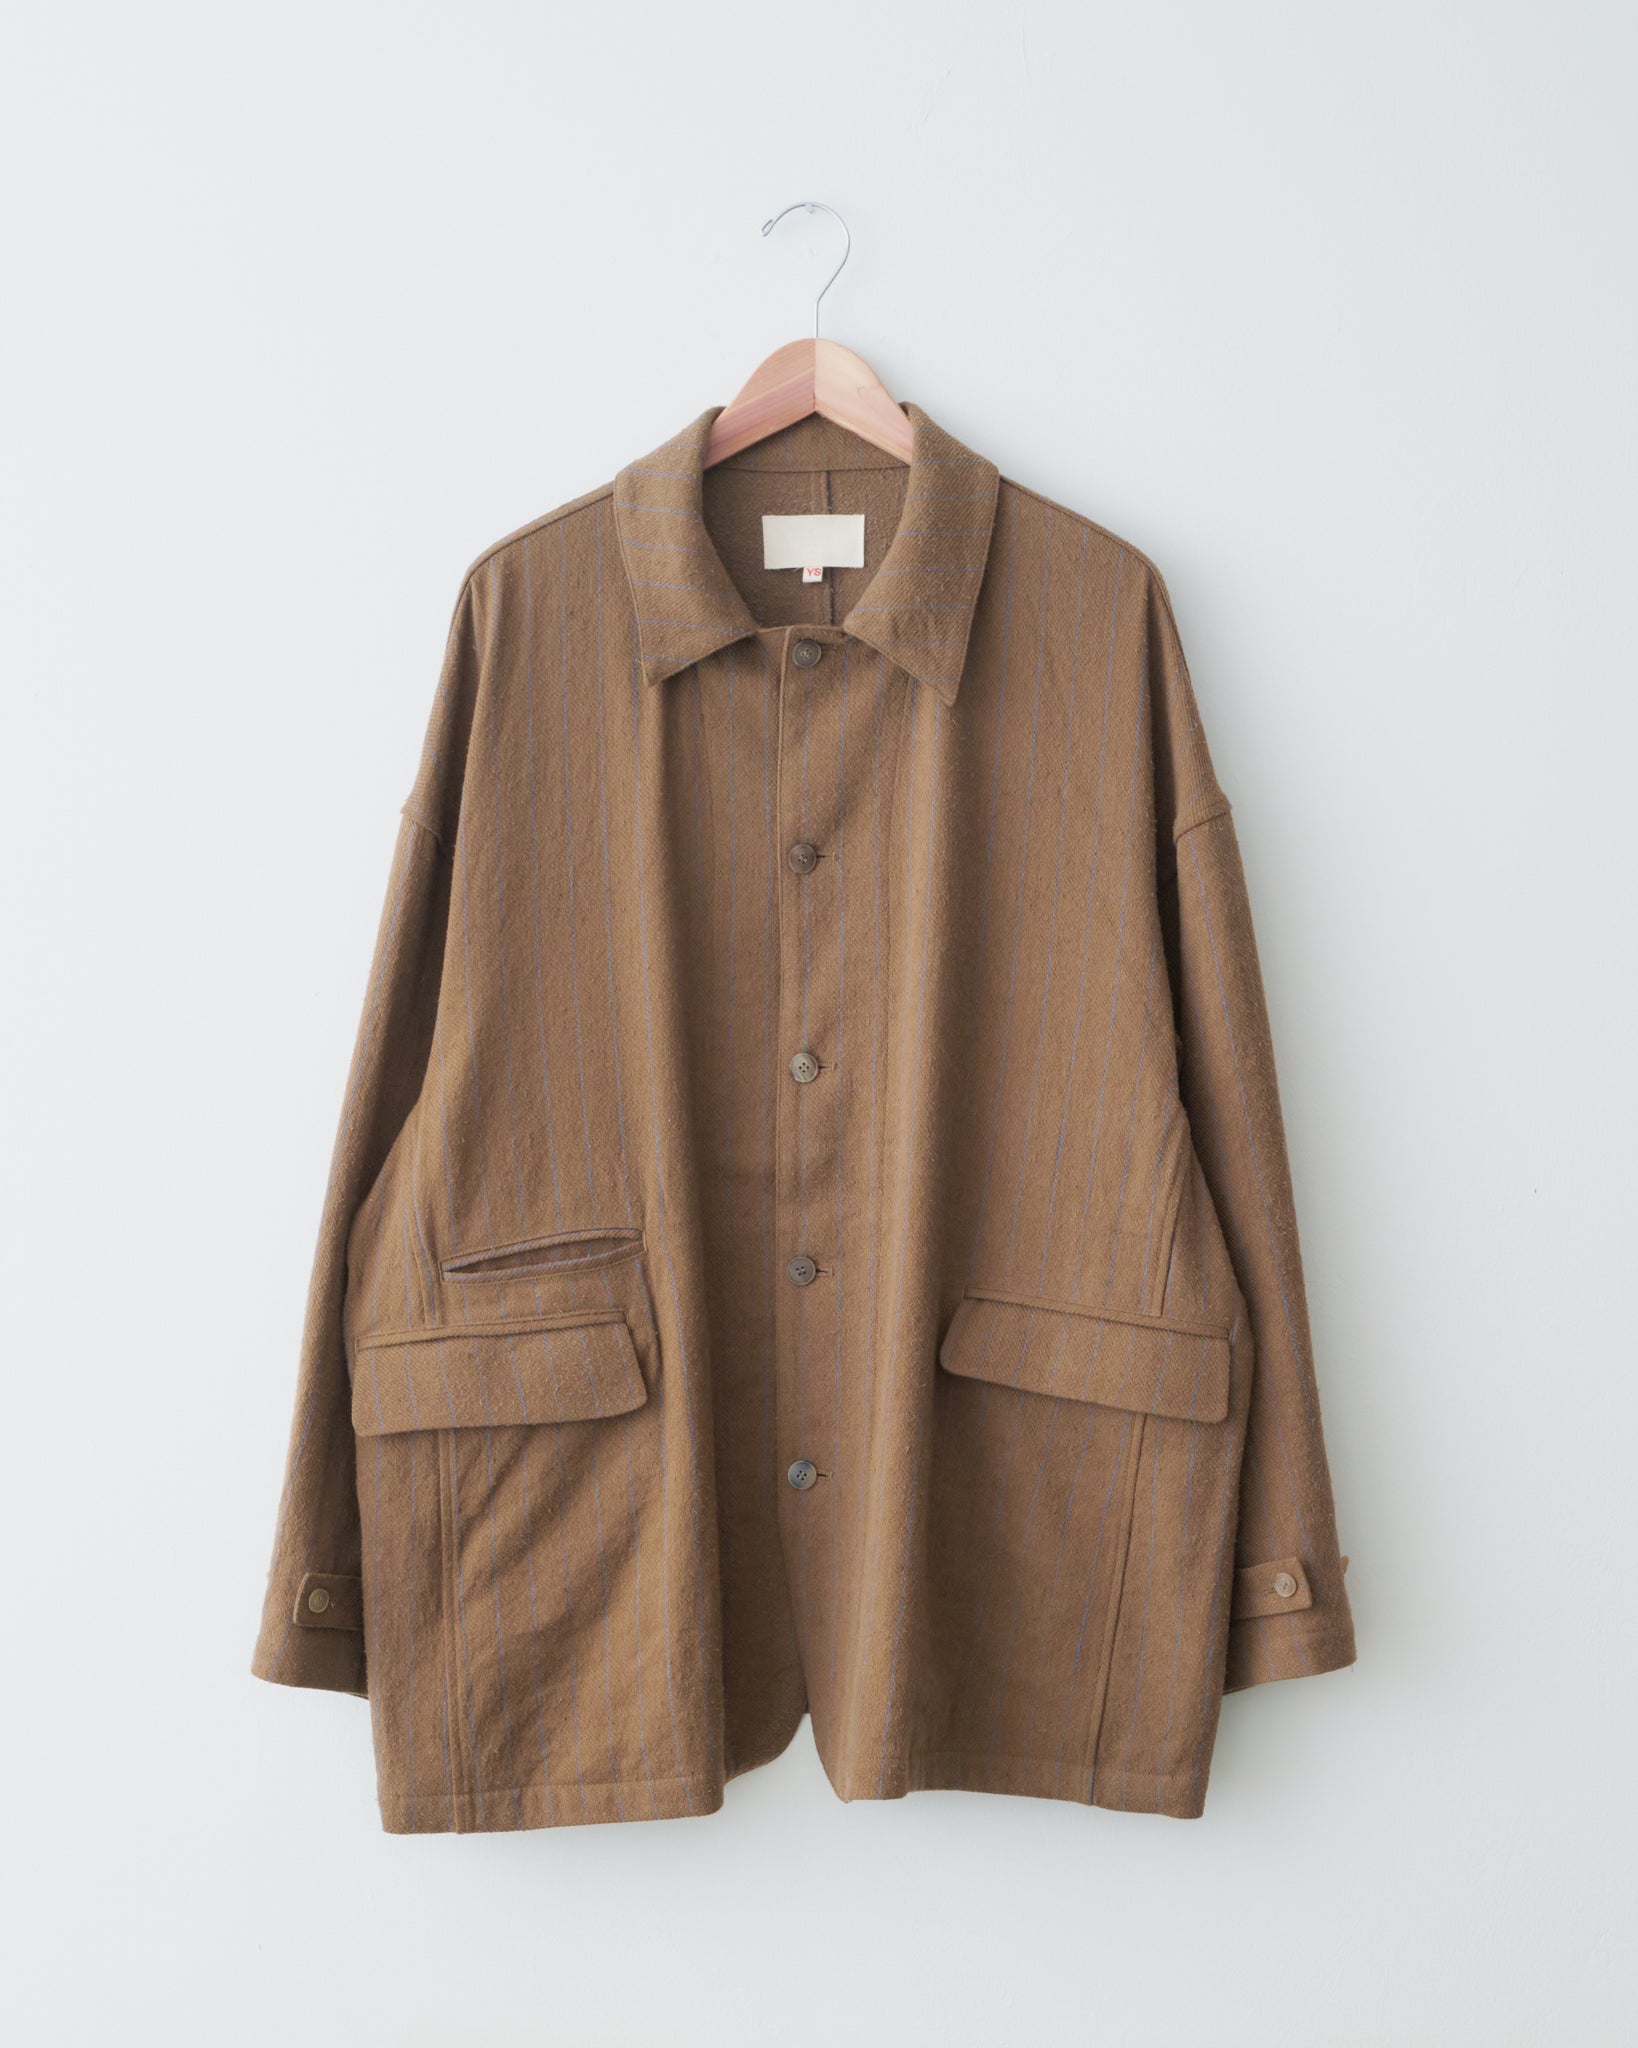 Antique Suit Shirt, Brown